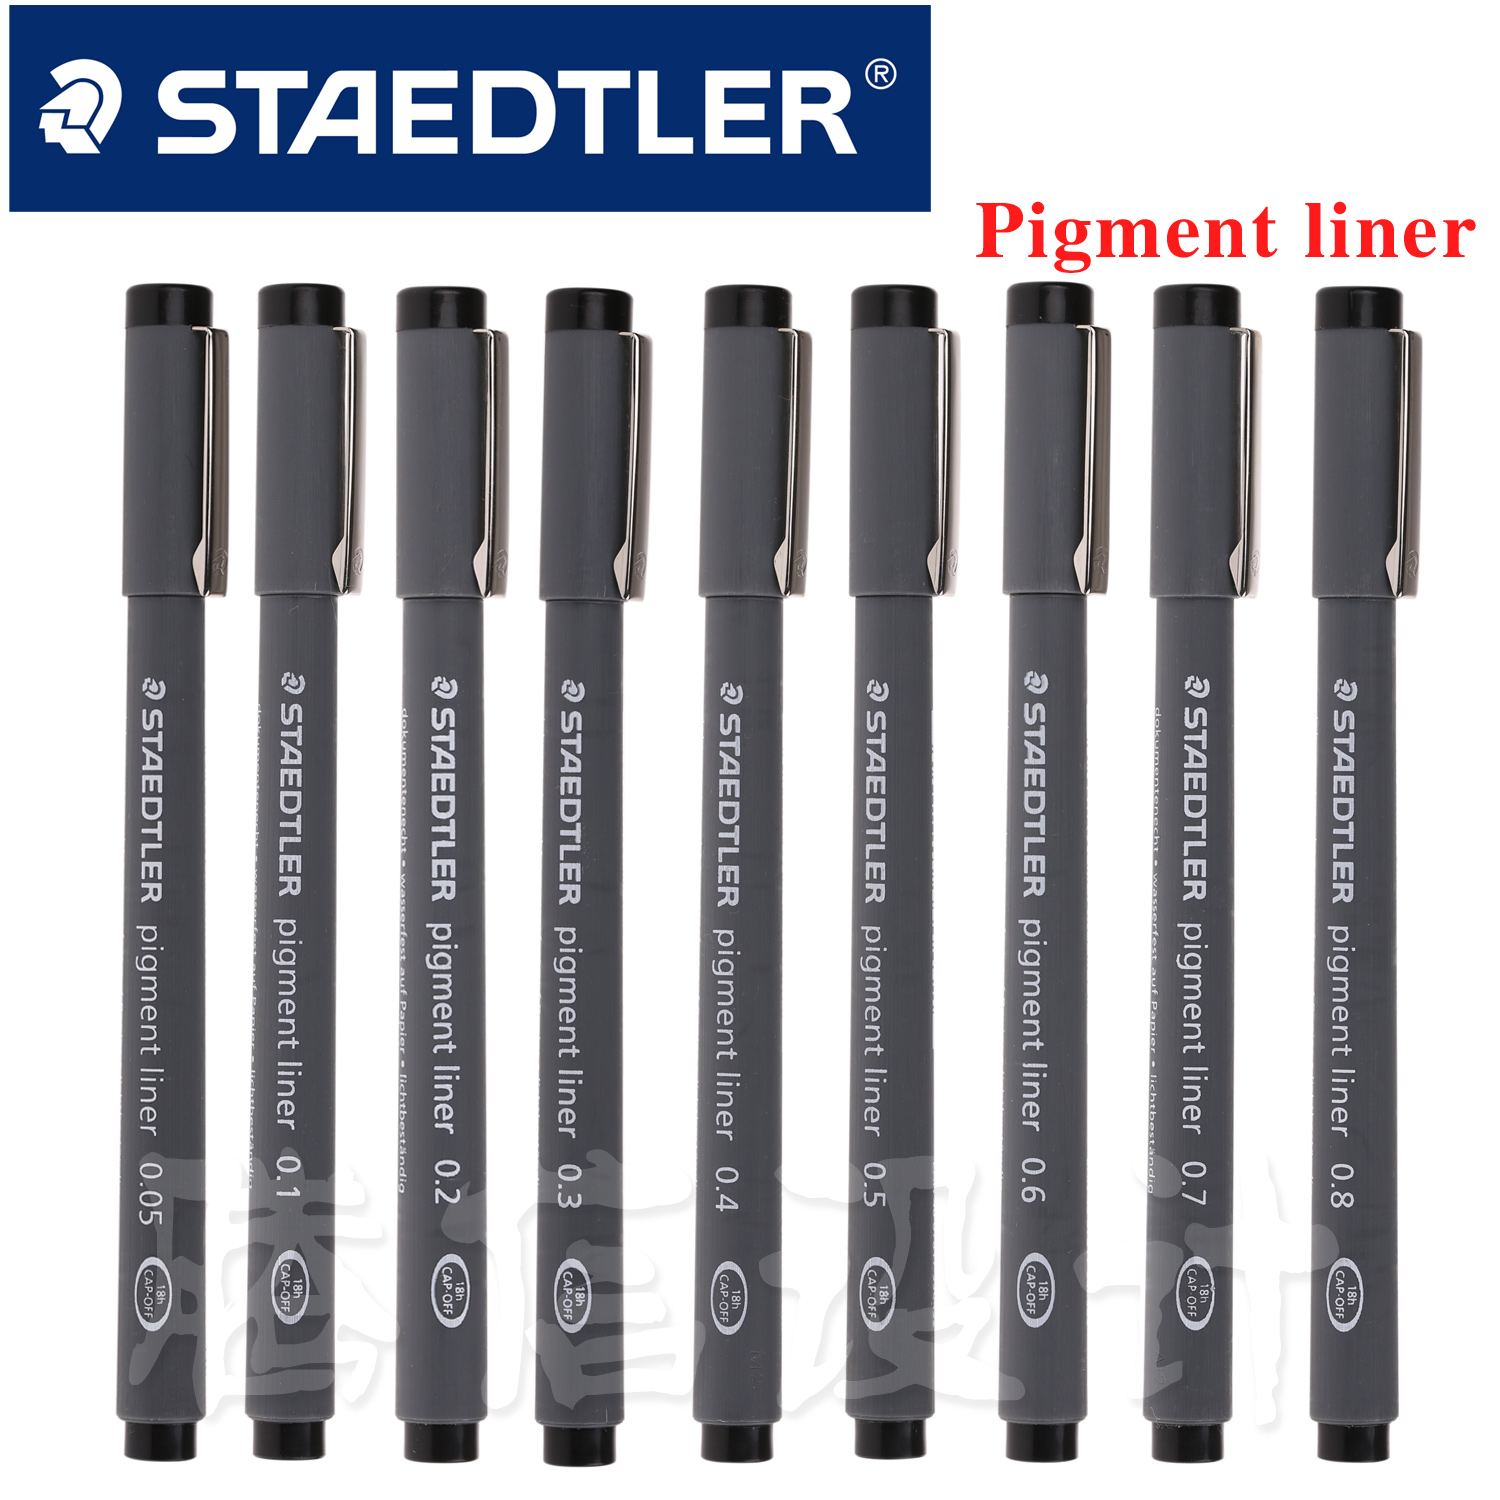 施德楼pigment liner一次性针管笔 （0.05-0.8）型号齐全折扣优惠信息